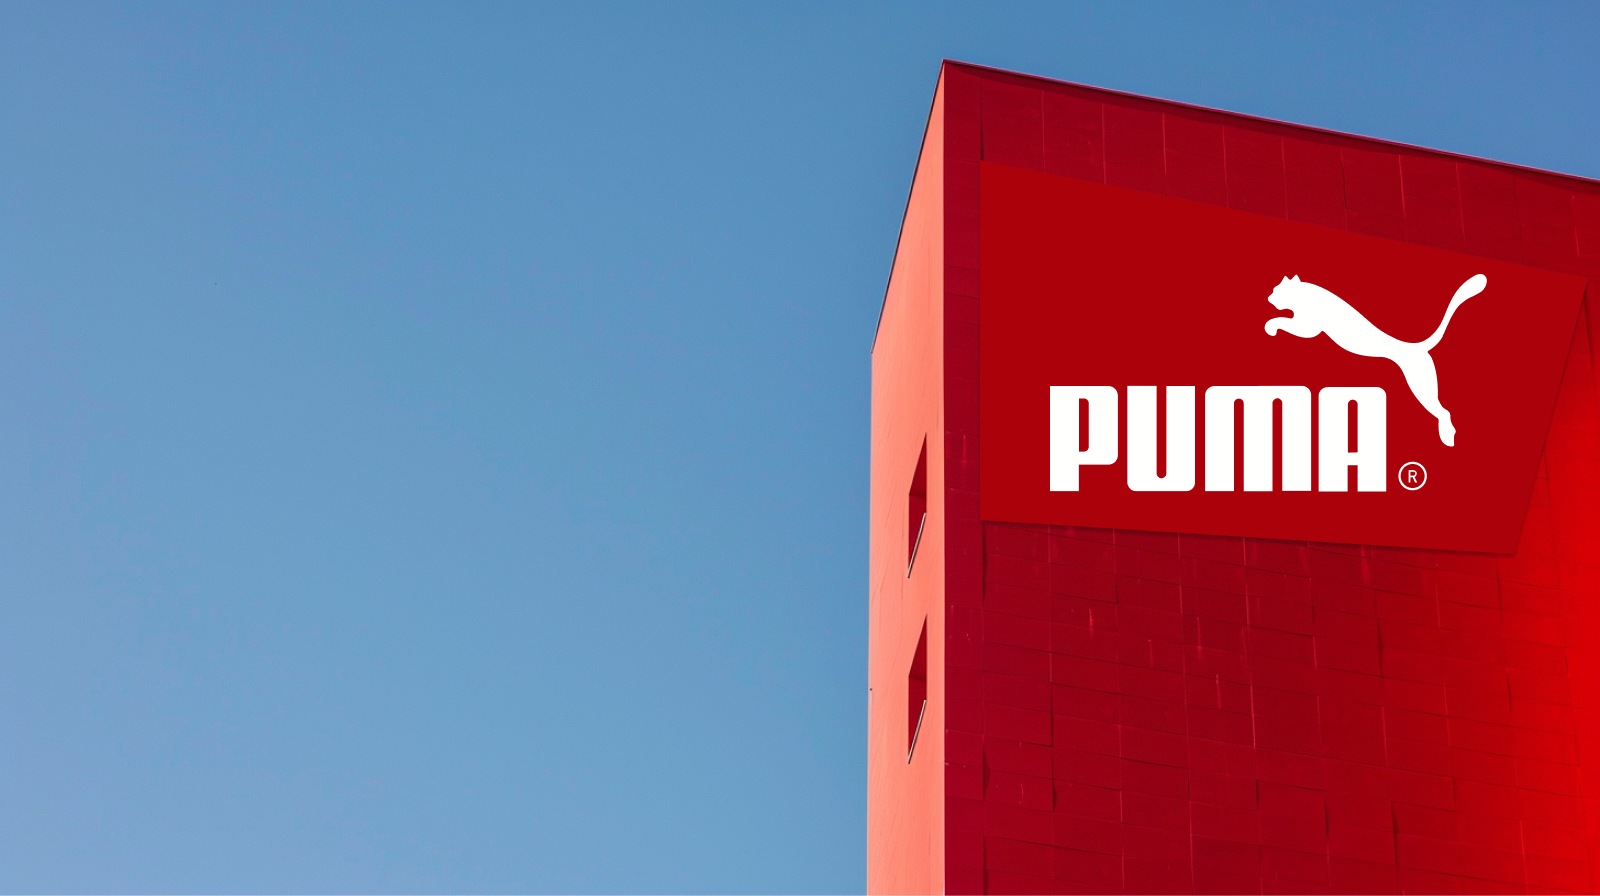 ein großer roter Monolith mit dem Puma-Logo und dem Markennamen in Weiß vor einem klaren blauen Himmel